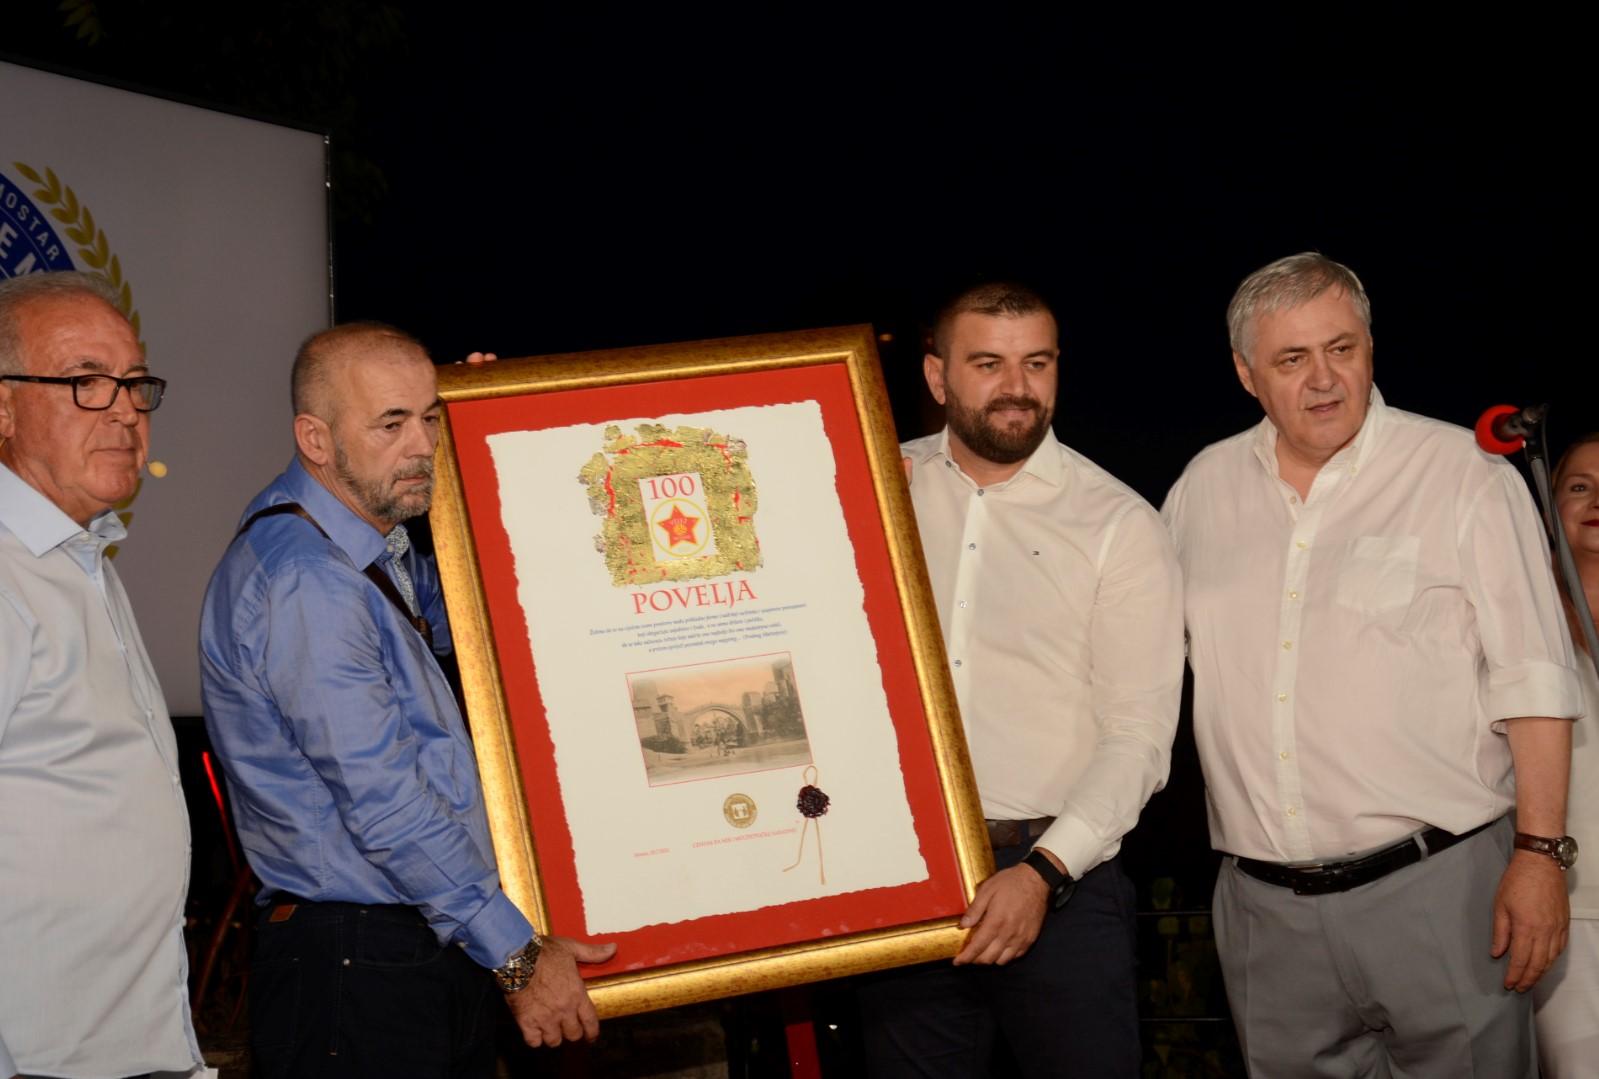 Centar za mir uručio Mostarsku povelju Fudbalskom klubu Velež